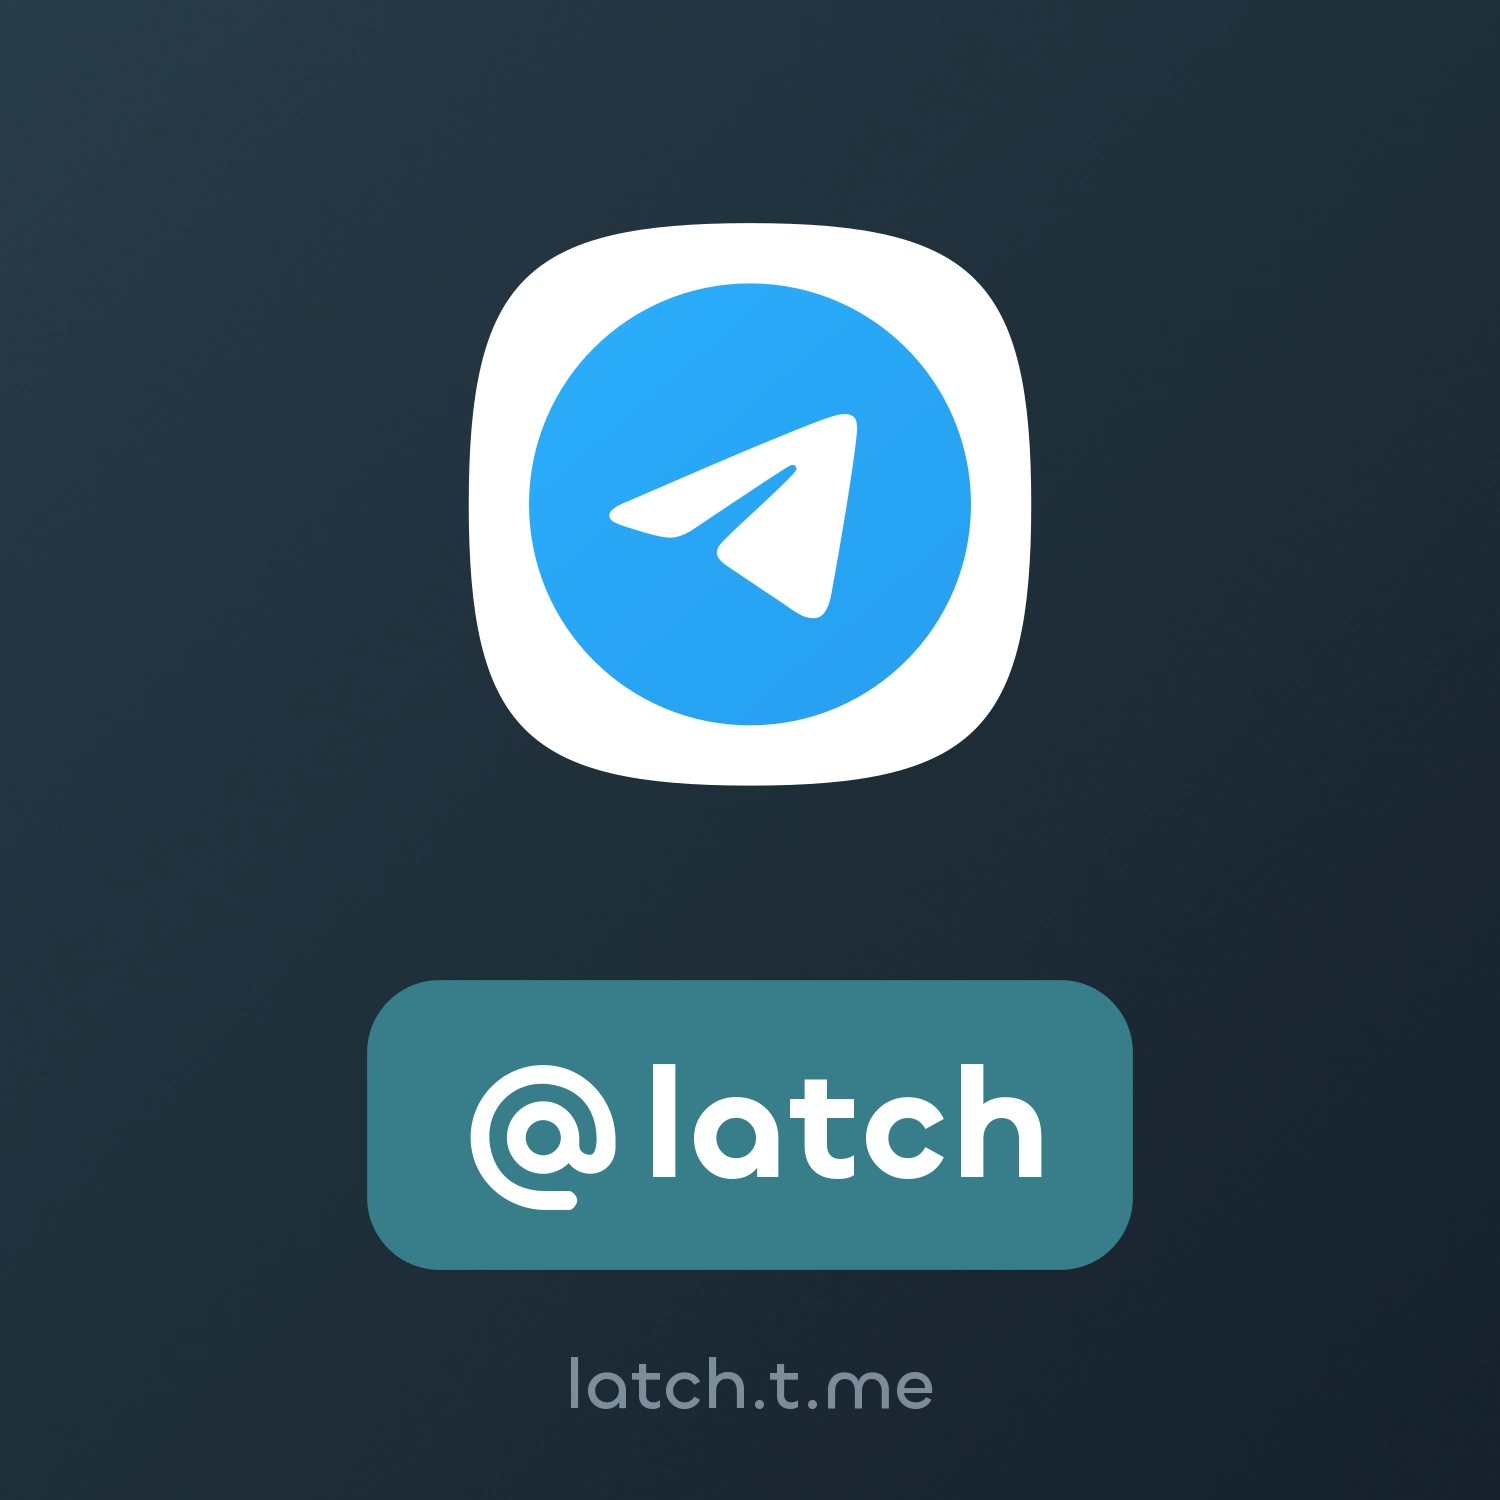 @latch